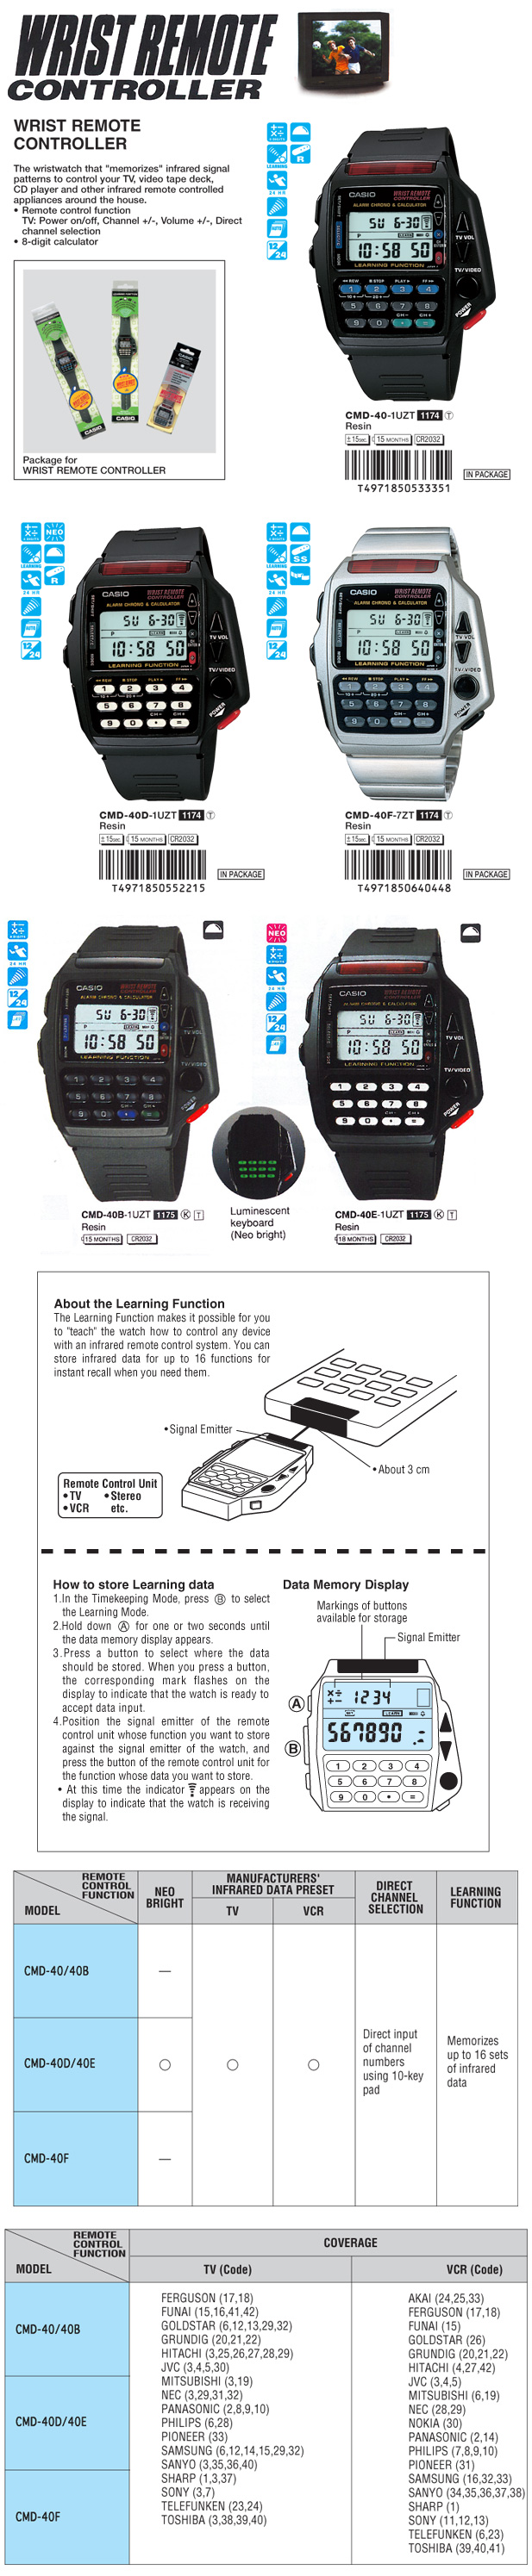 Timepiece, Wrist remote controller, Data Memory display, CMD-40-1U, CMD-40D-1U, CMD-40F-7, CMD-40B-1U, CMD-40E-1U